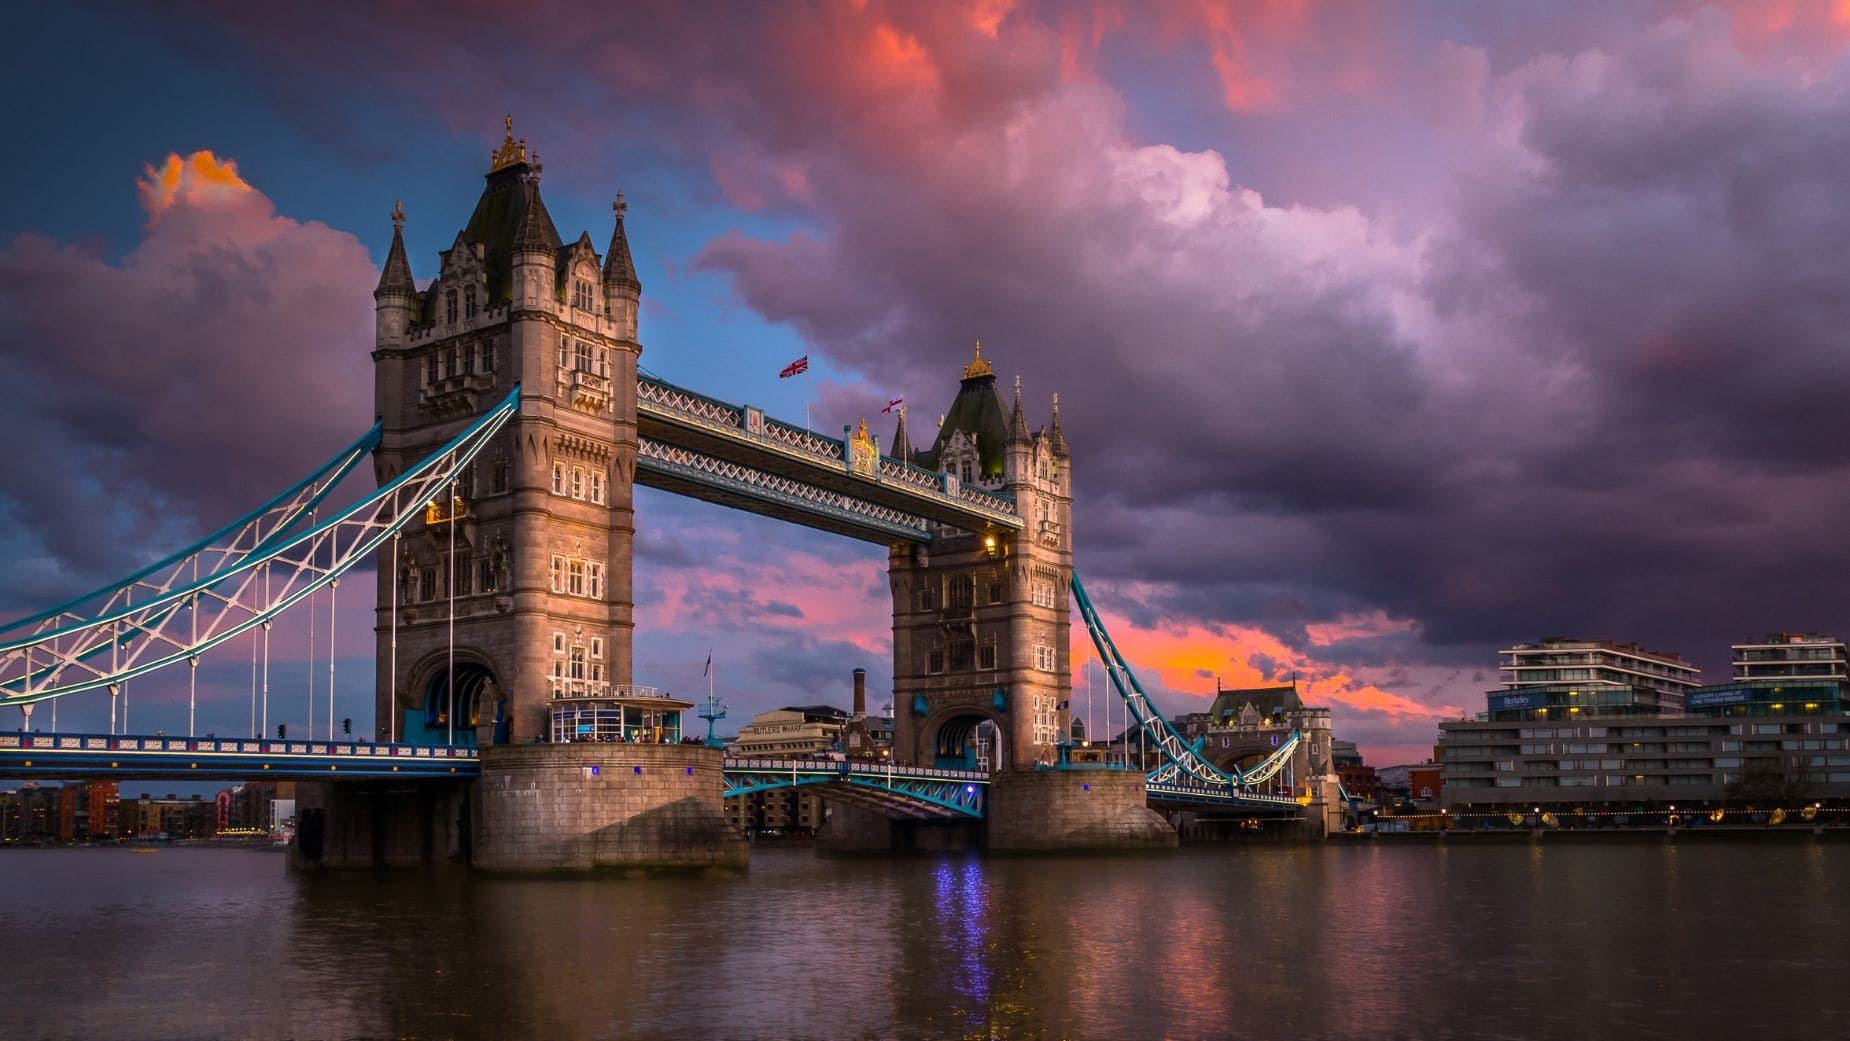 Viajes El Corte Inglés ha lanzado una oferta irrechazable para viajar a Londres